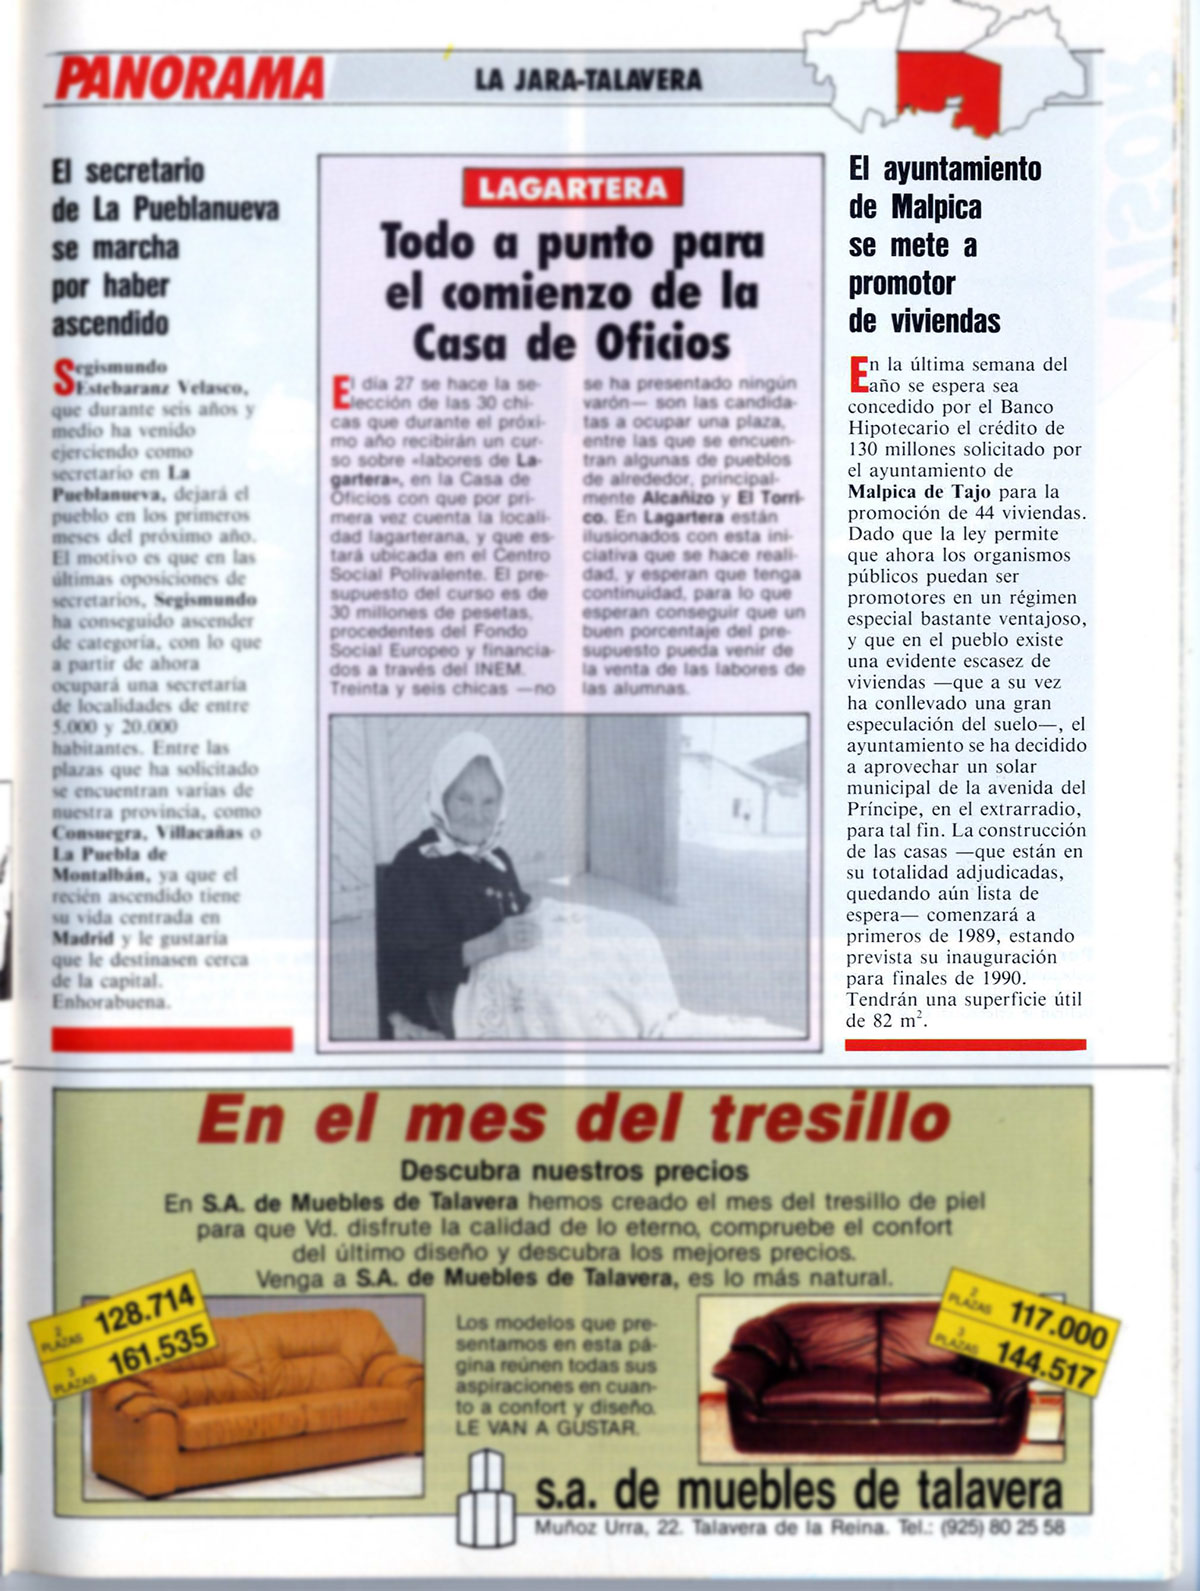 El ayuntamiento de Malpica de Tajo promueve la constucción de 44 nuevas viviendas. Bisagra. N.º 60, 25-31/12/1988